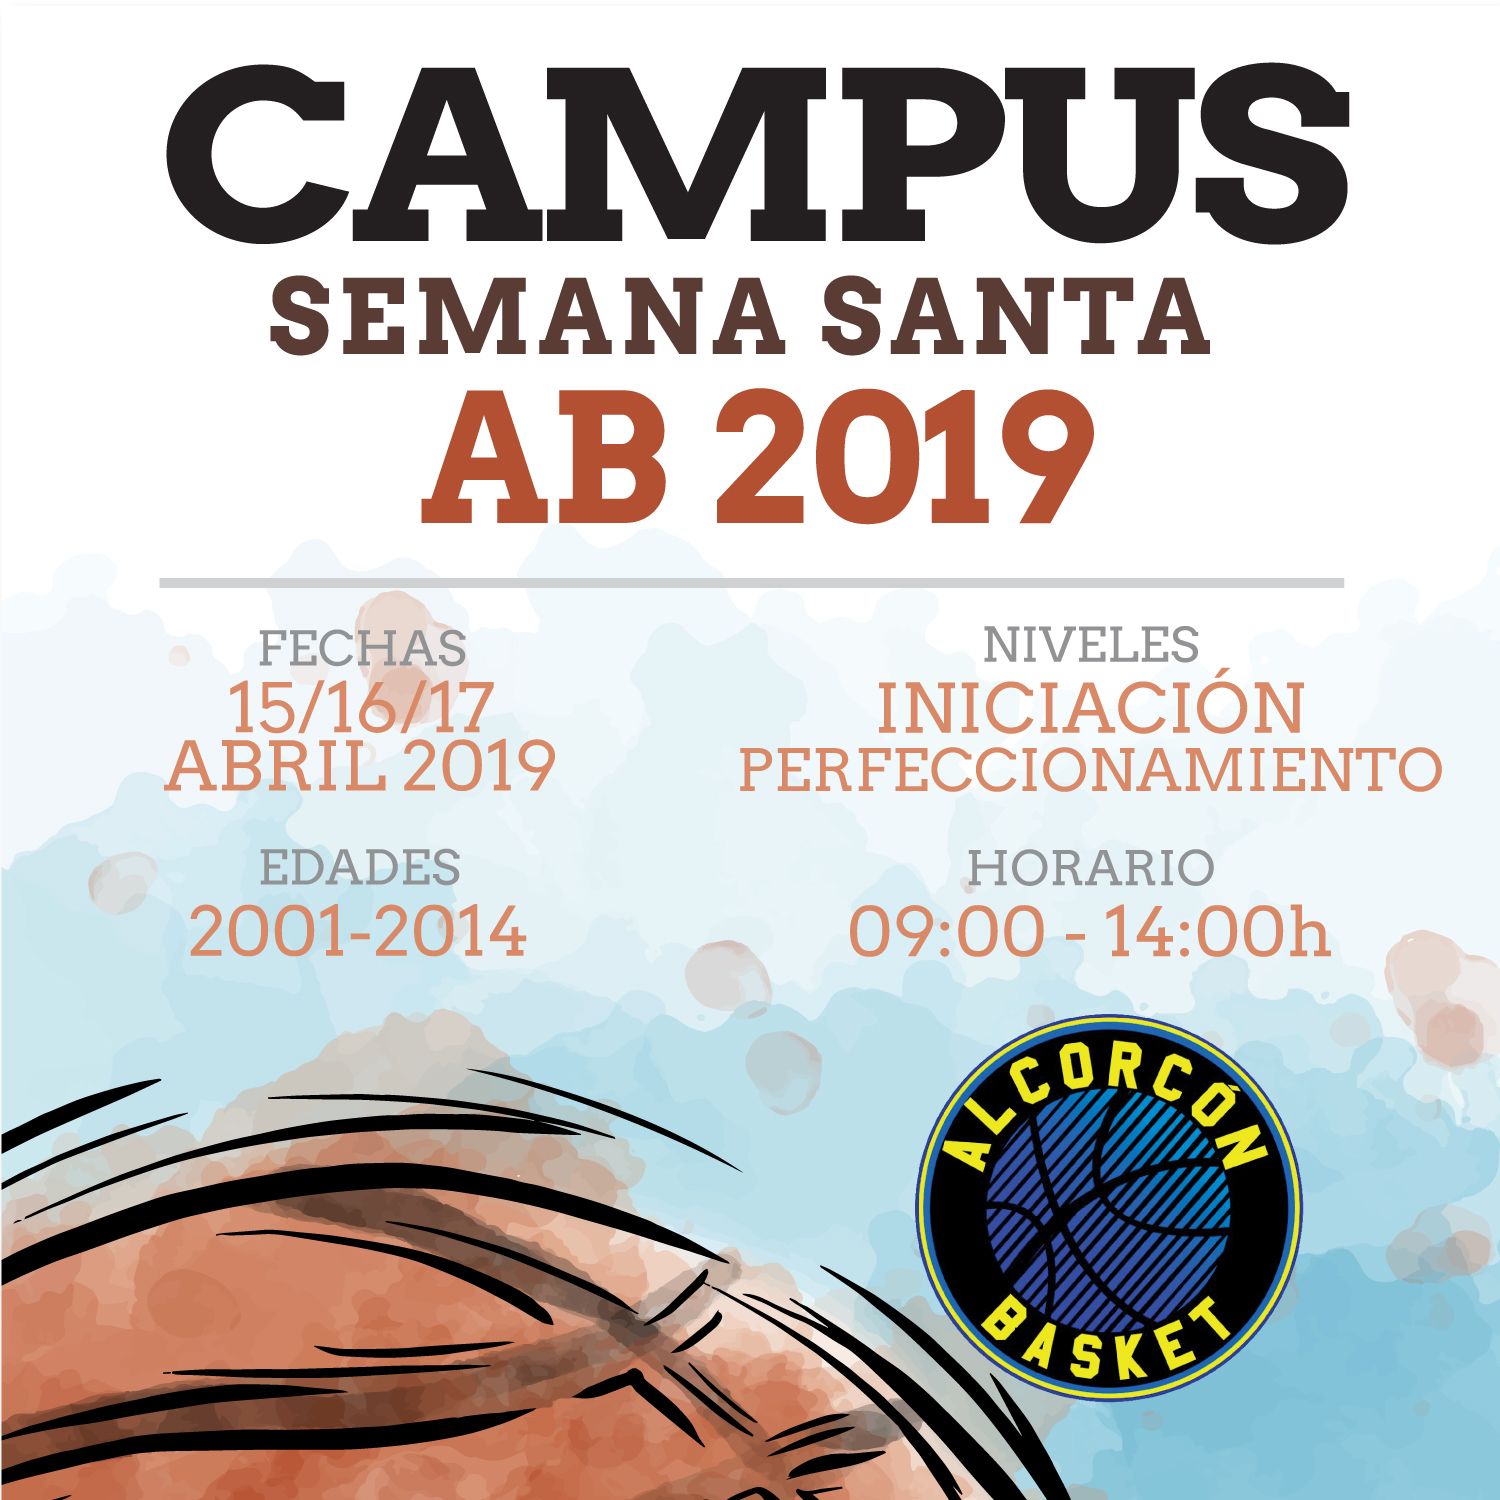 campus semana santa 2019 ab